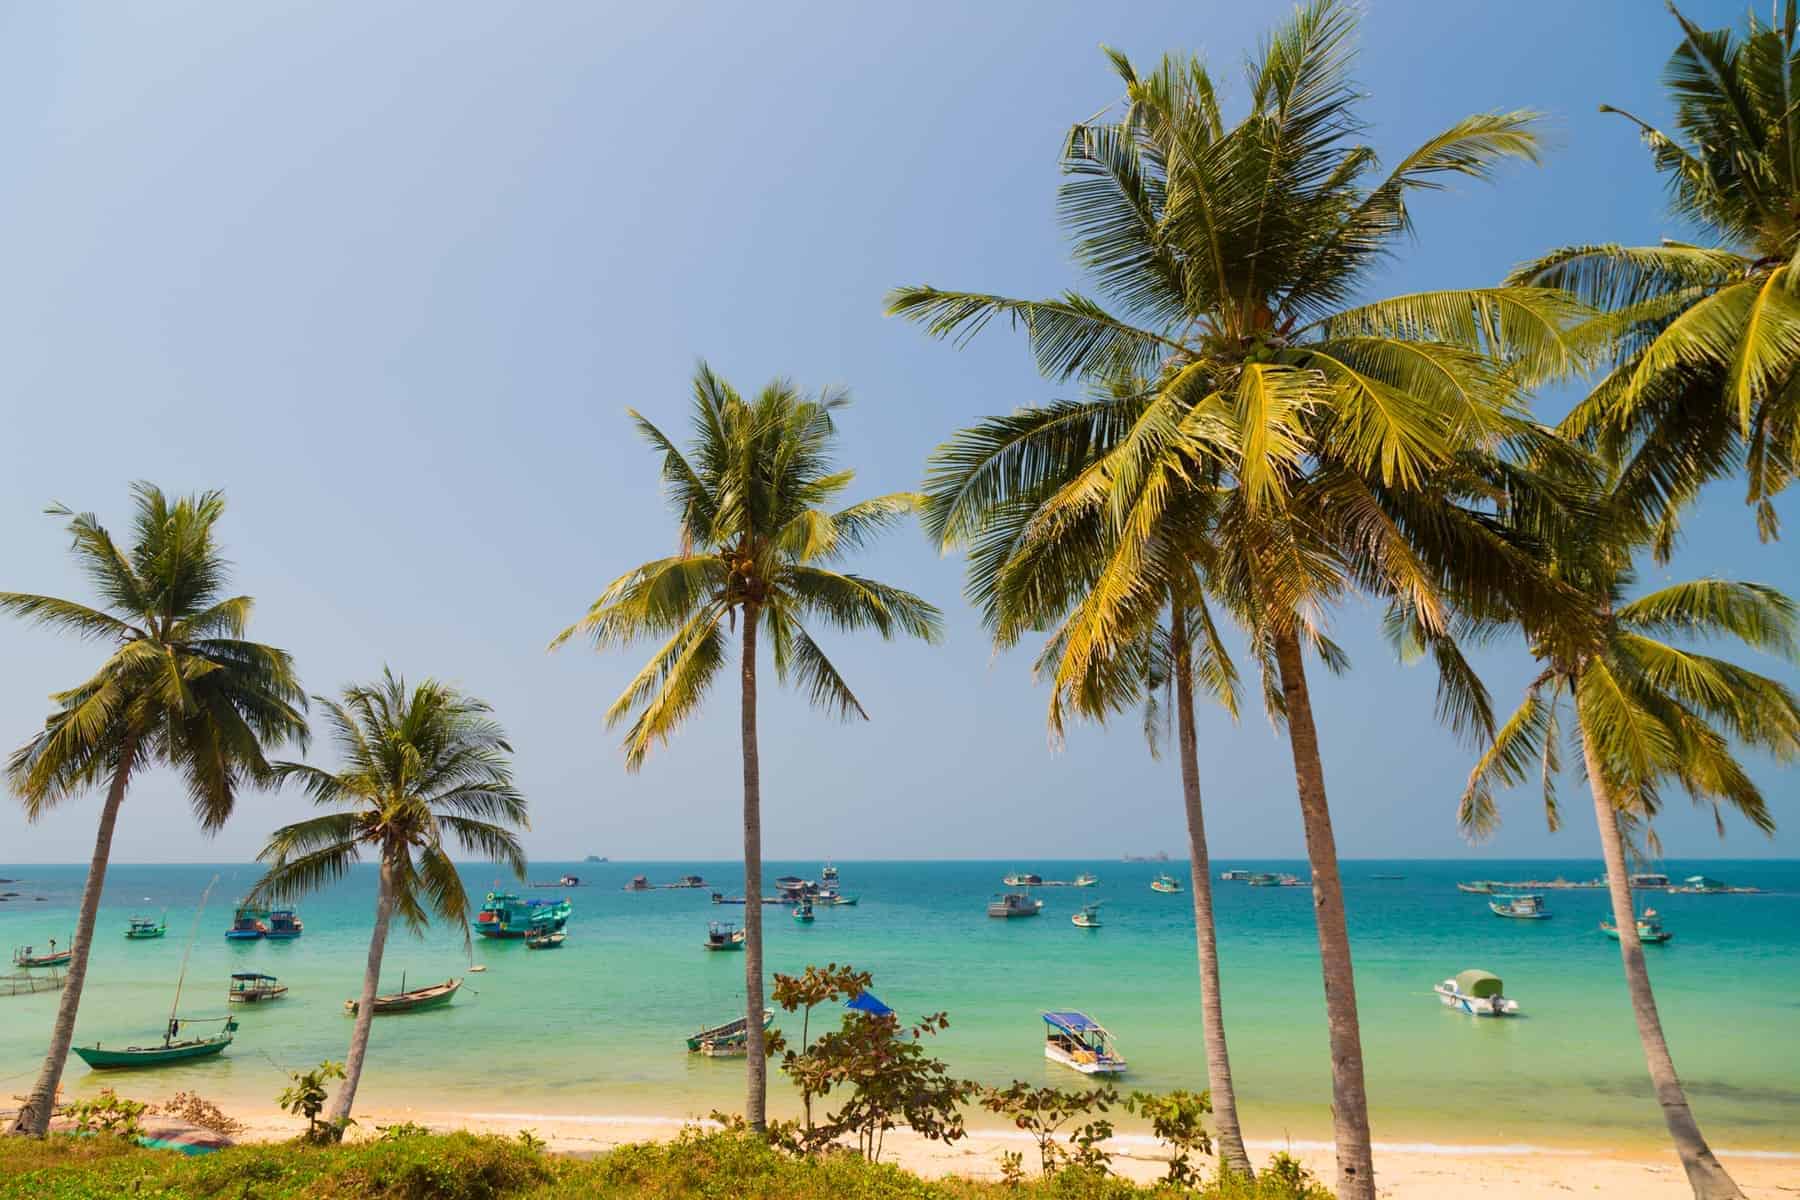  Phu Quoc, Vietnam, et af de mest eftertragtede rejsemål i Vietnam